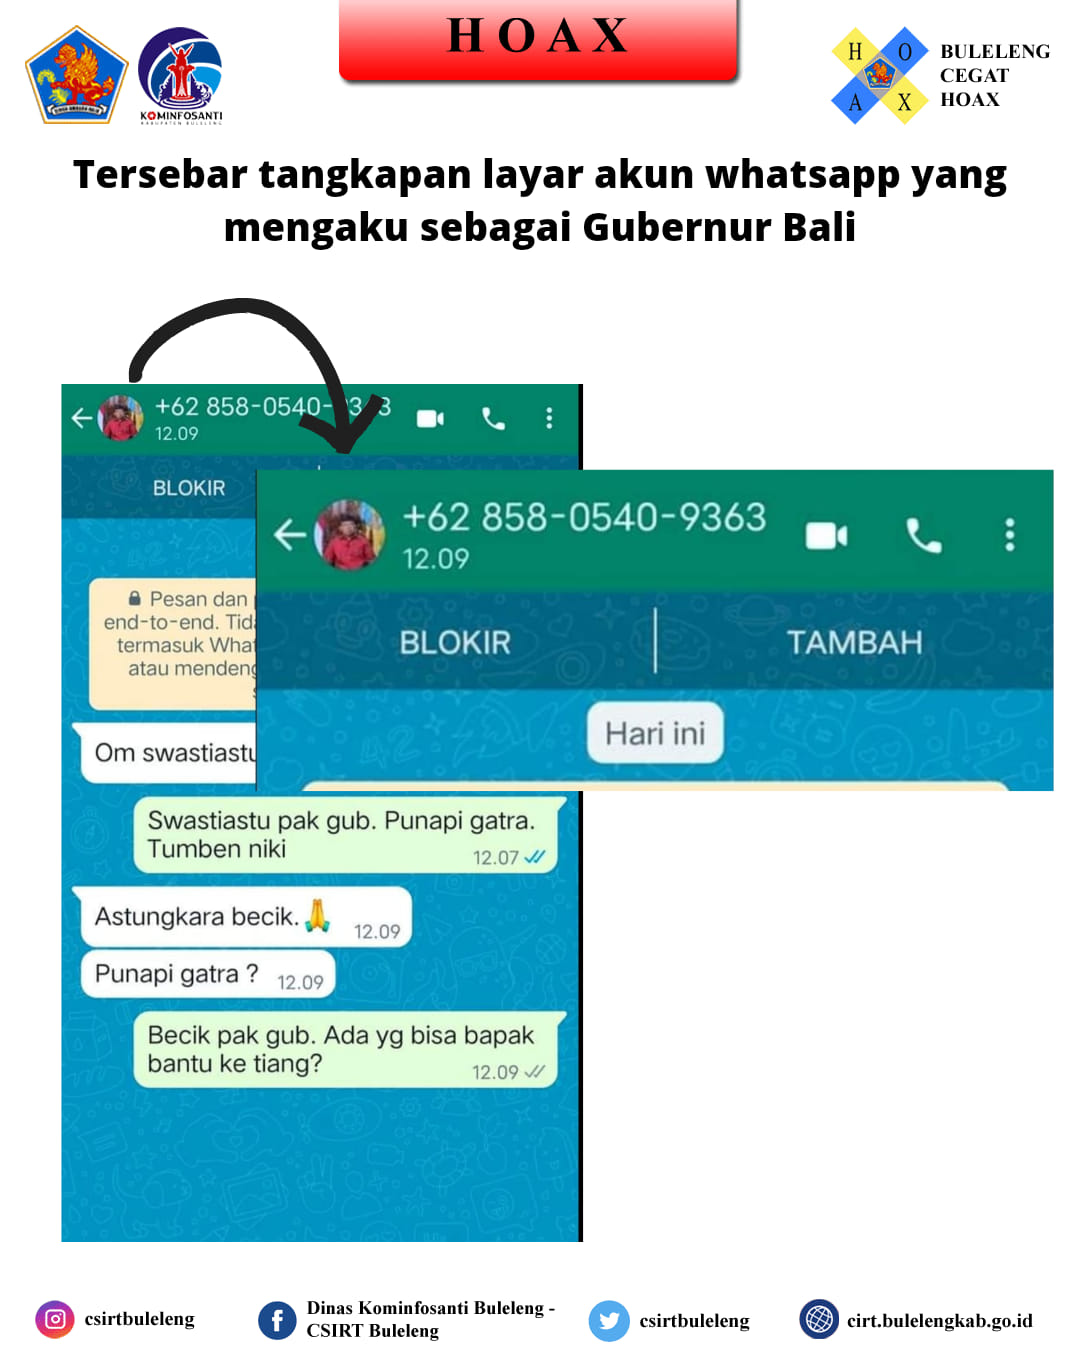 Tersebar akun whatsapp yang menggunakan foto profil dan mengaku sebagai Gubernur Bali